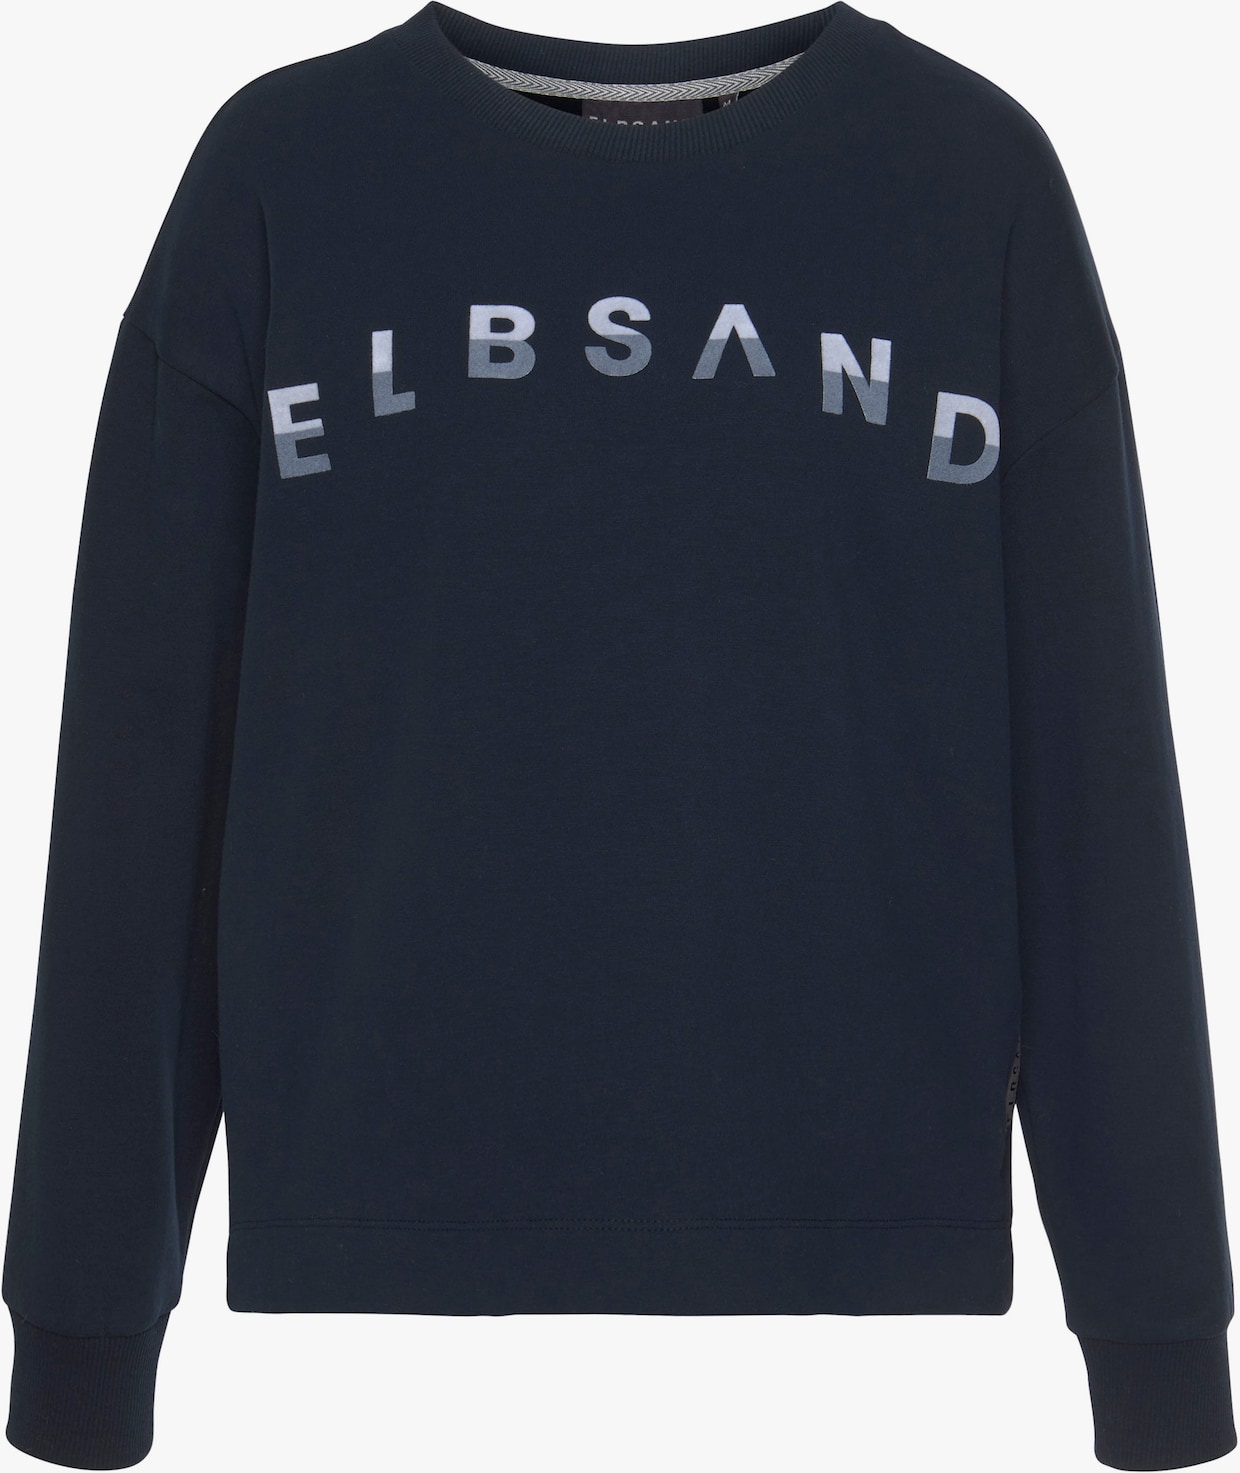 Elbsand Sweat-shirt - marine